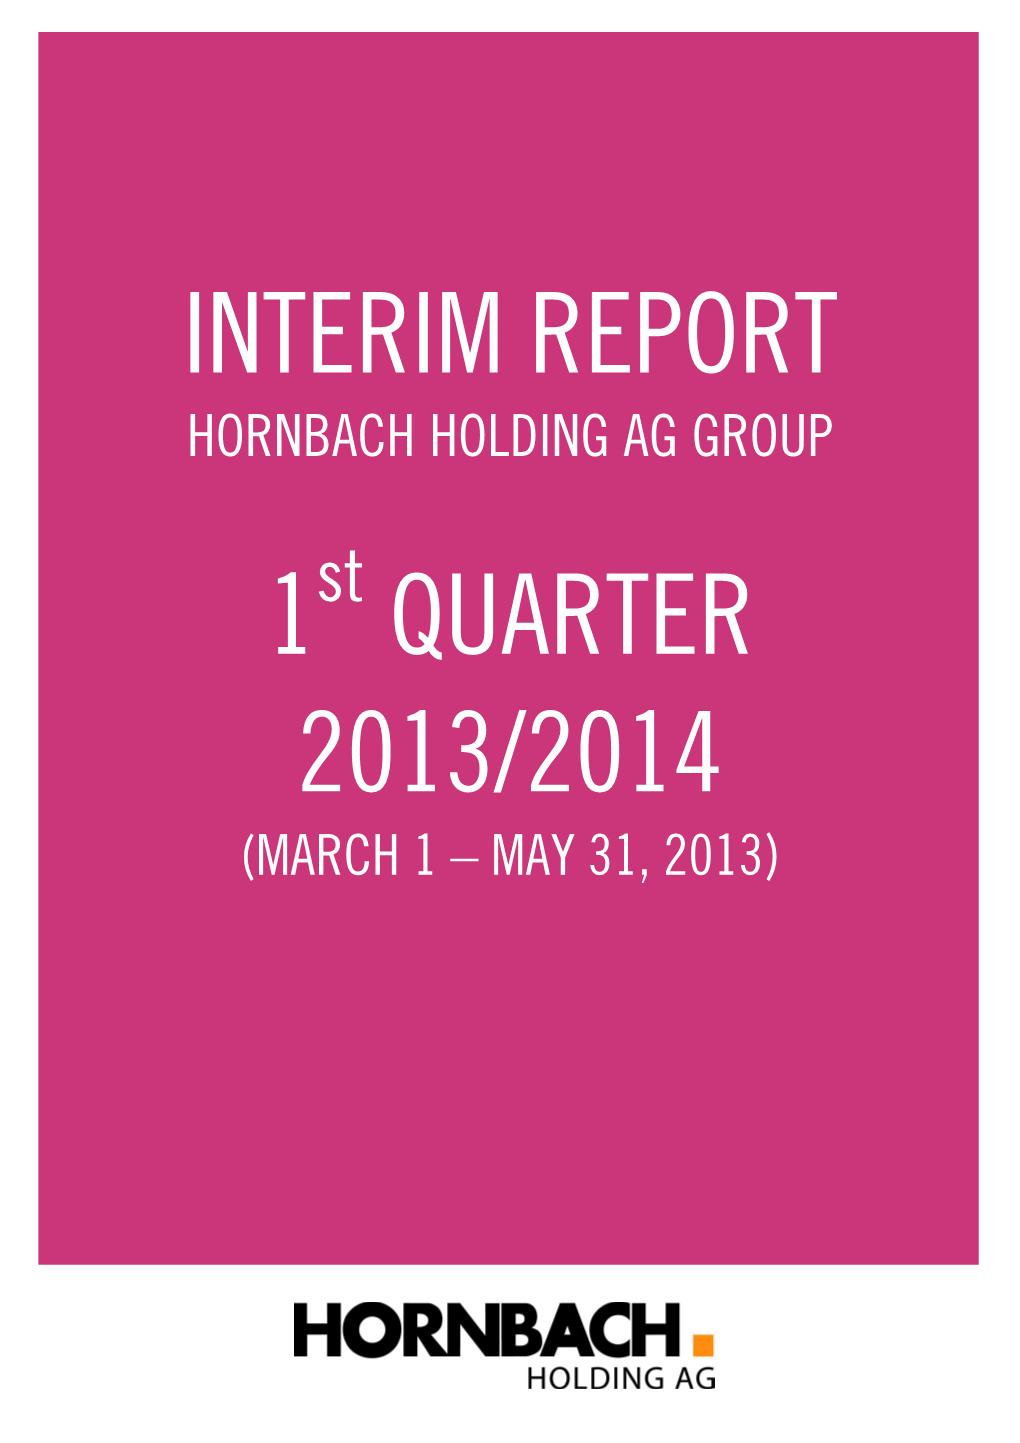 Interim Report 1 Quarter 2013/2014